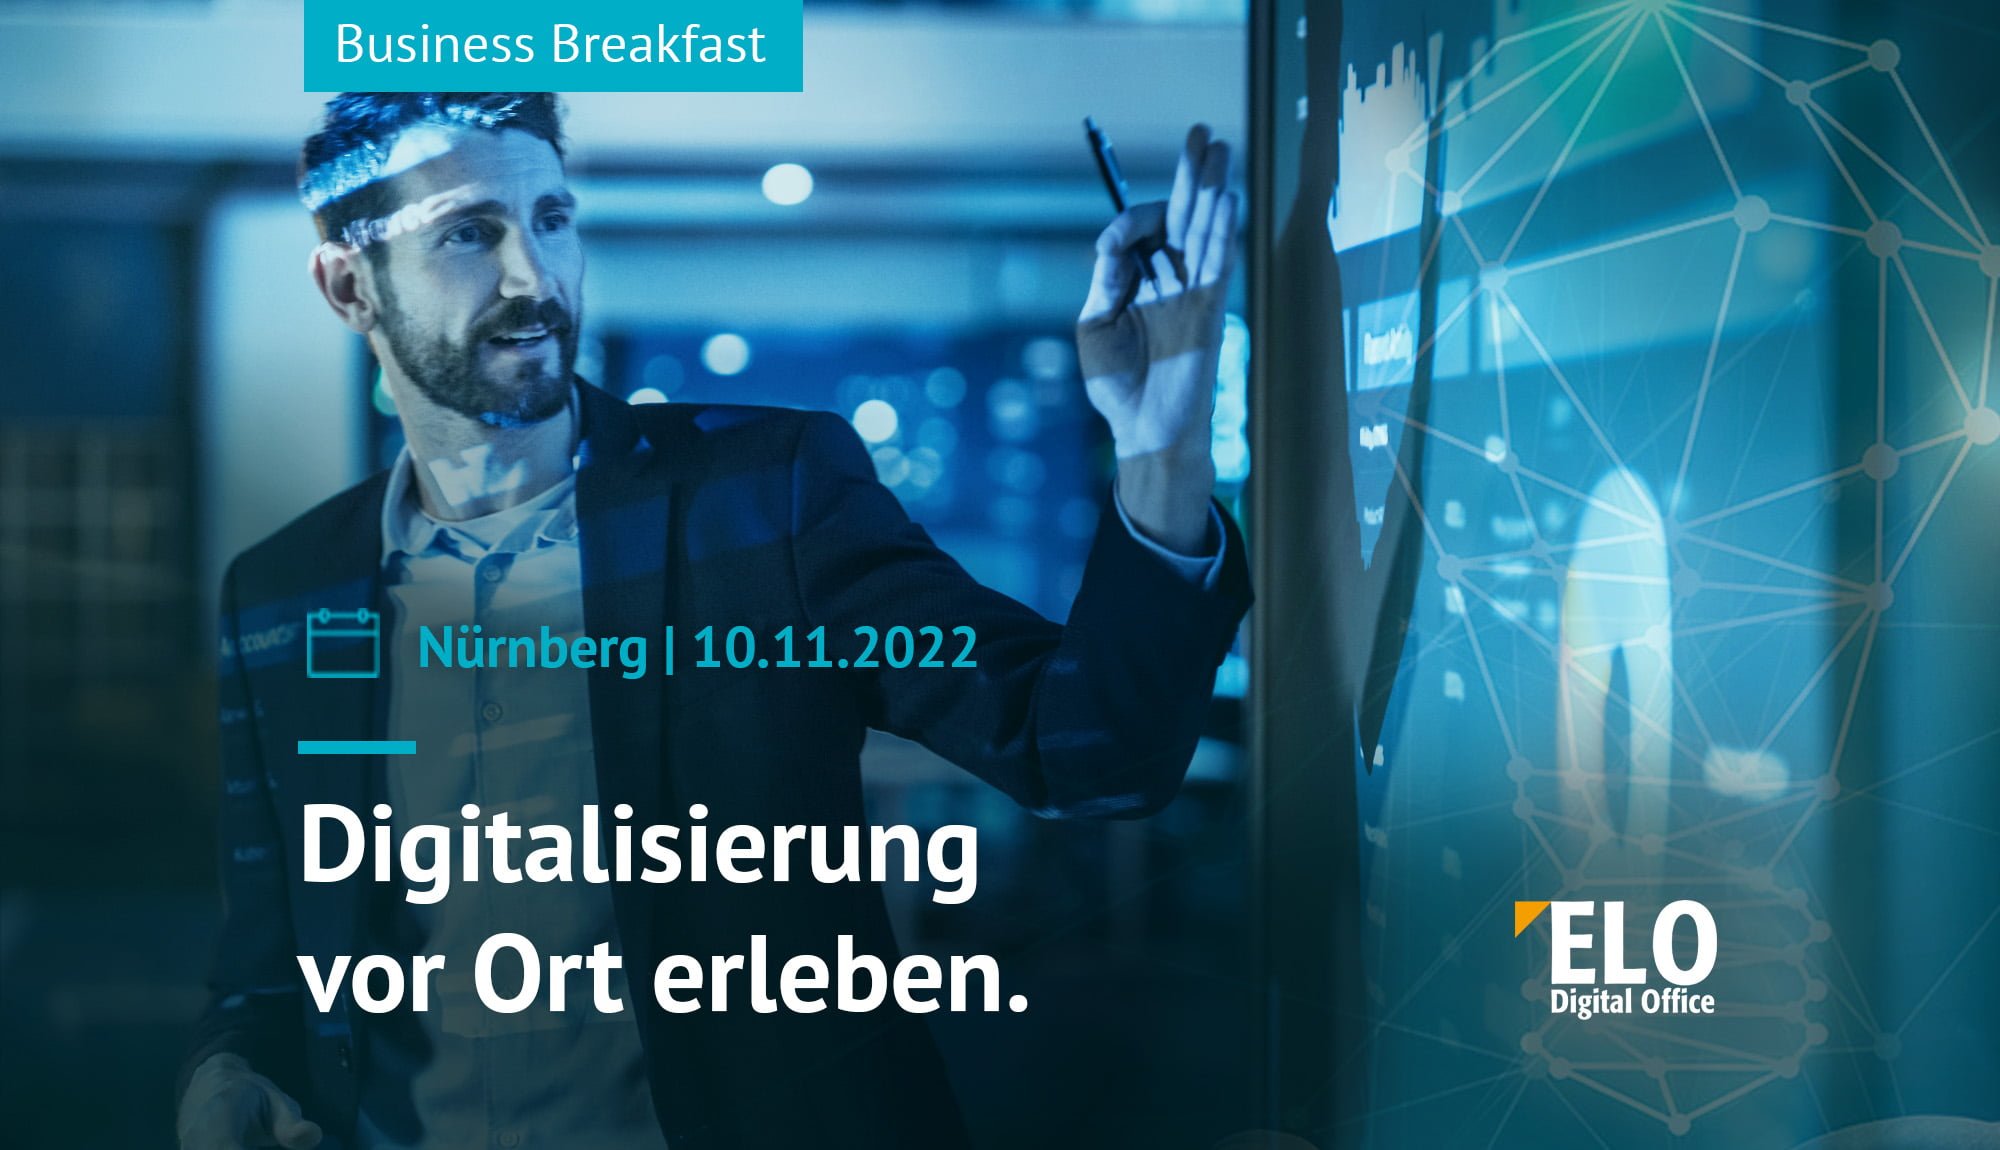 ELO Business Breakfast | MR Datentechnik Nürnberg